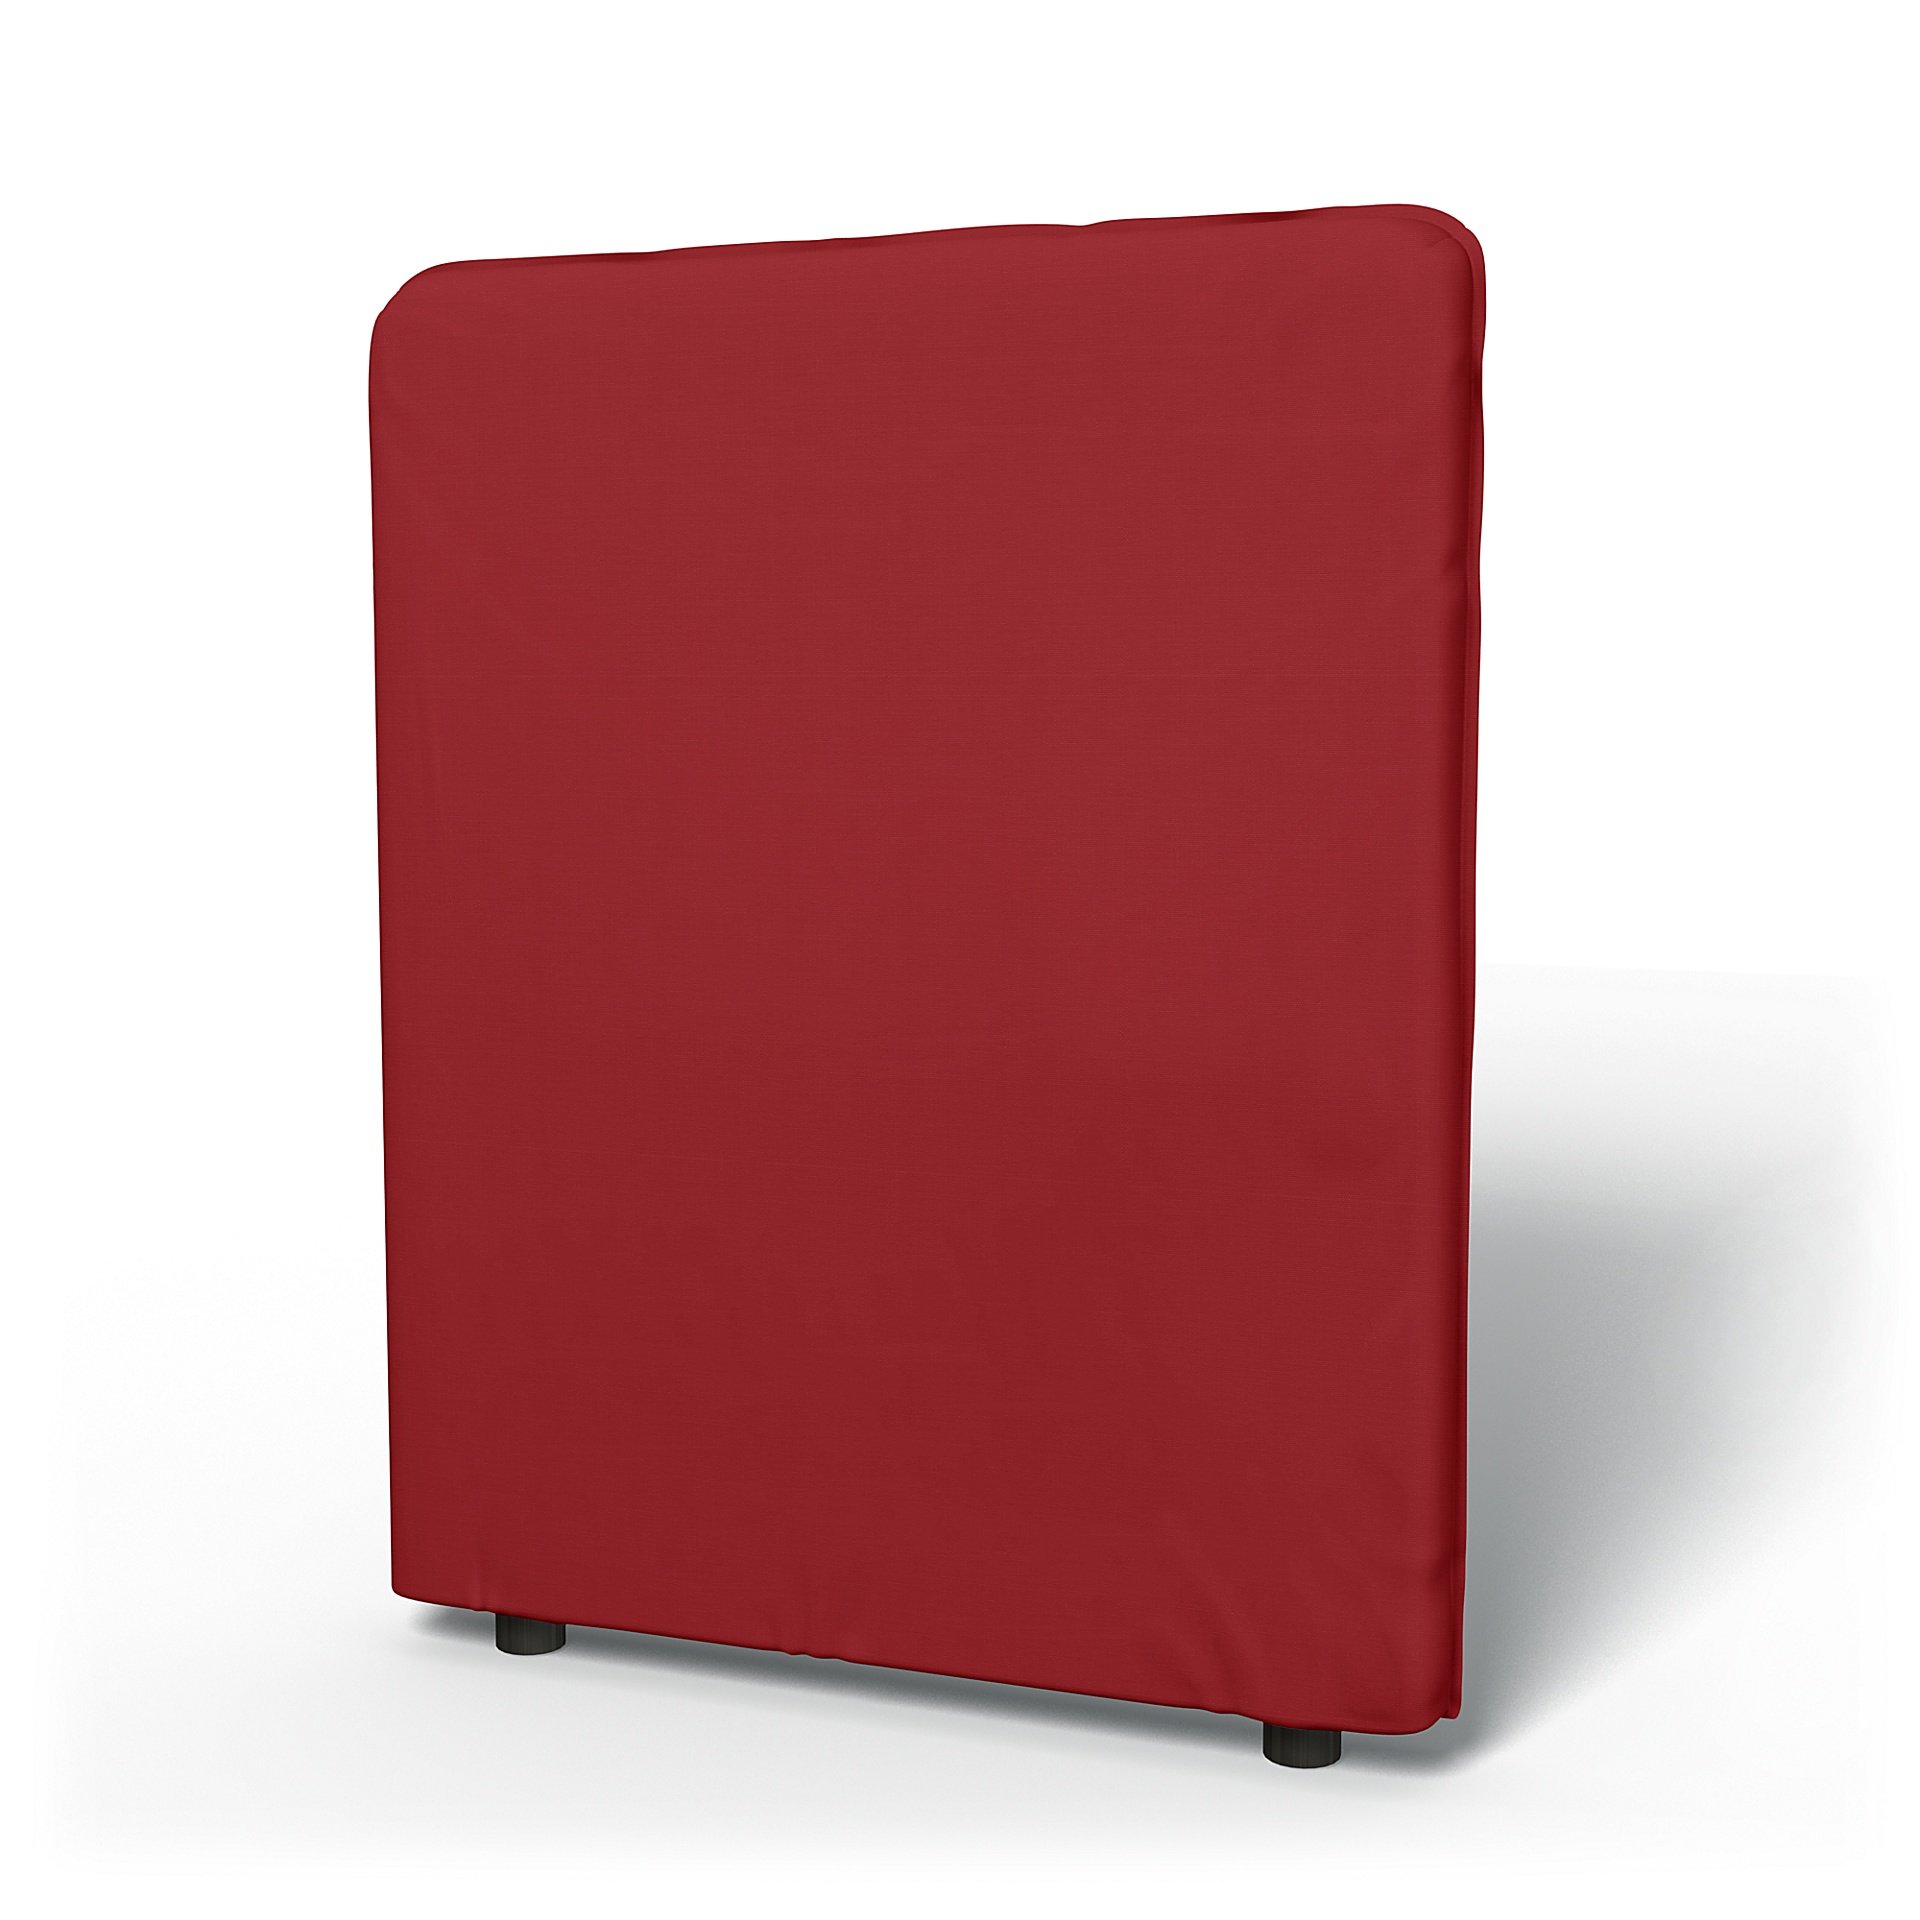 IKEA - Överdrag till Vallentuna ryggstöd hög (80x100cm), Scarlet Red, Bomull - Bemz